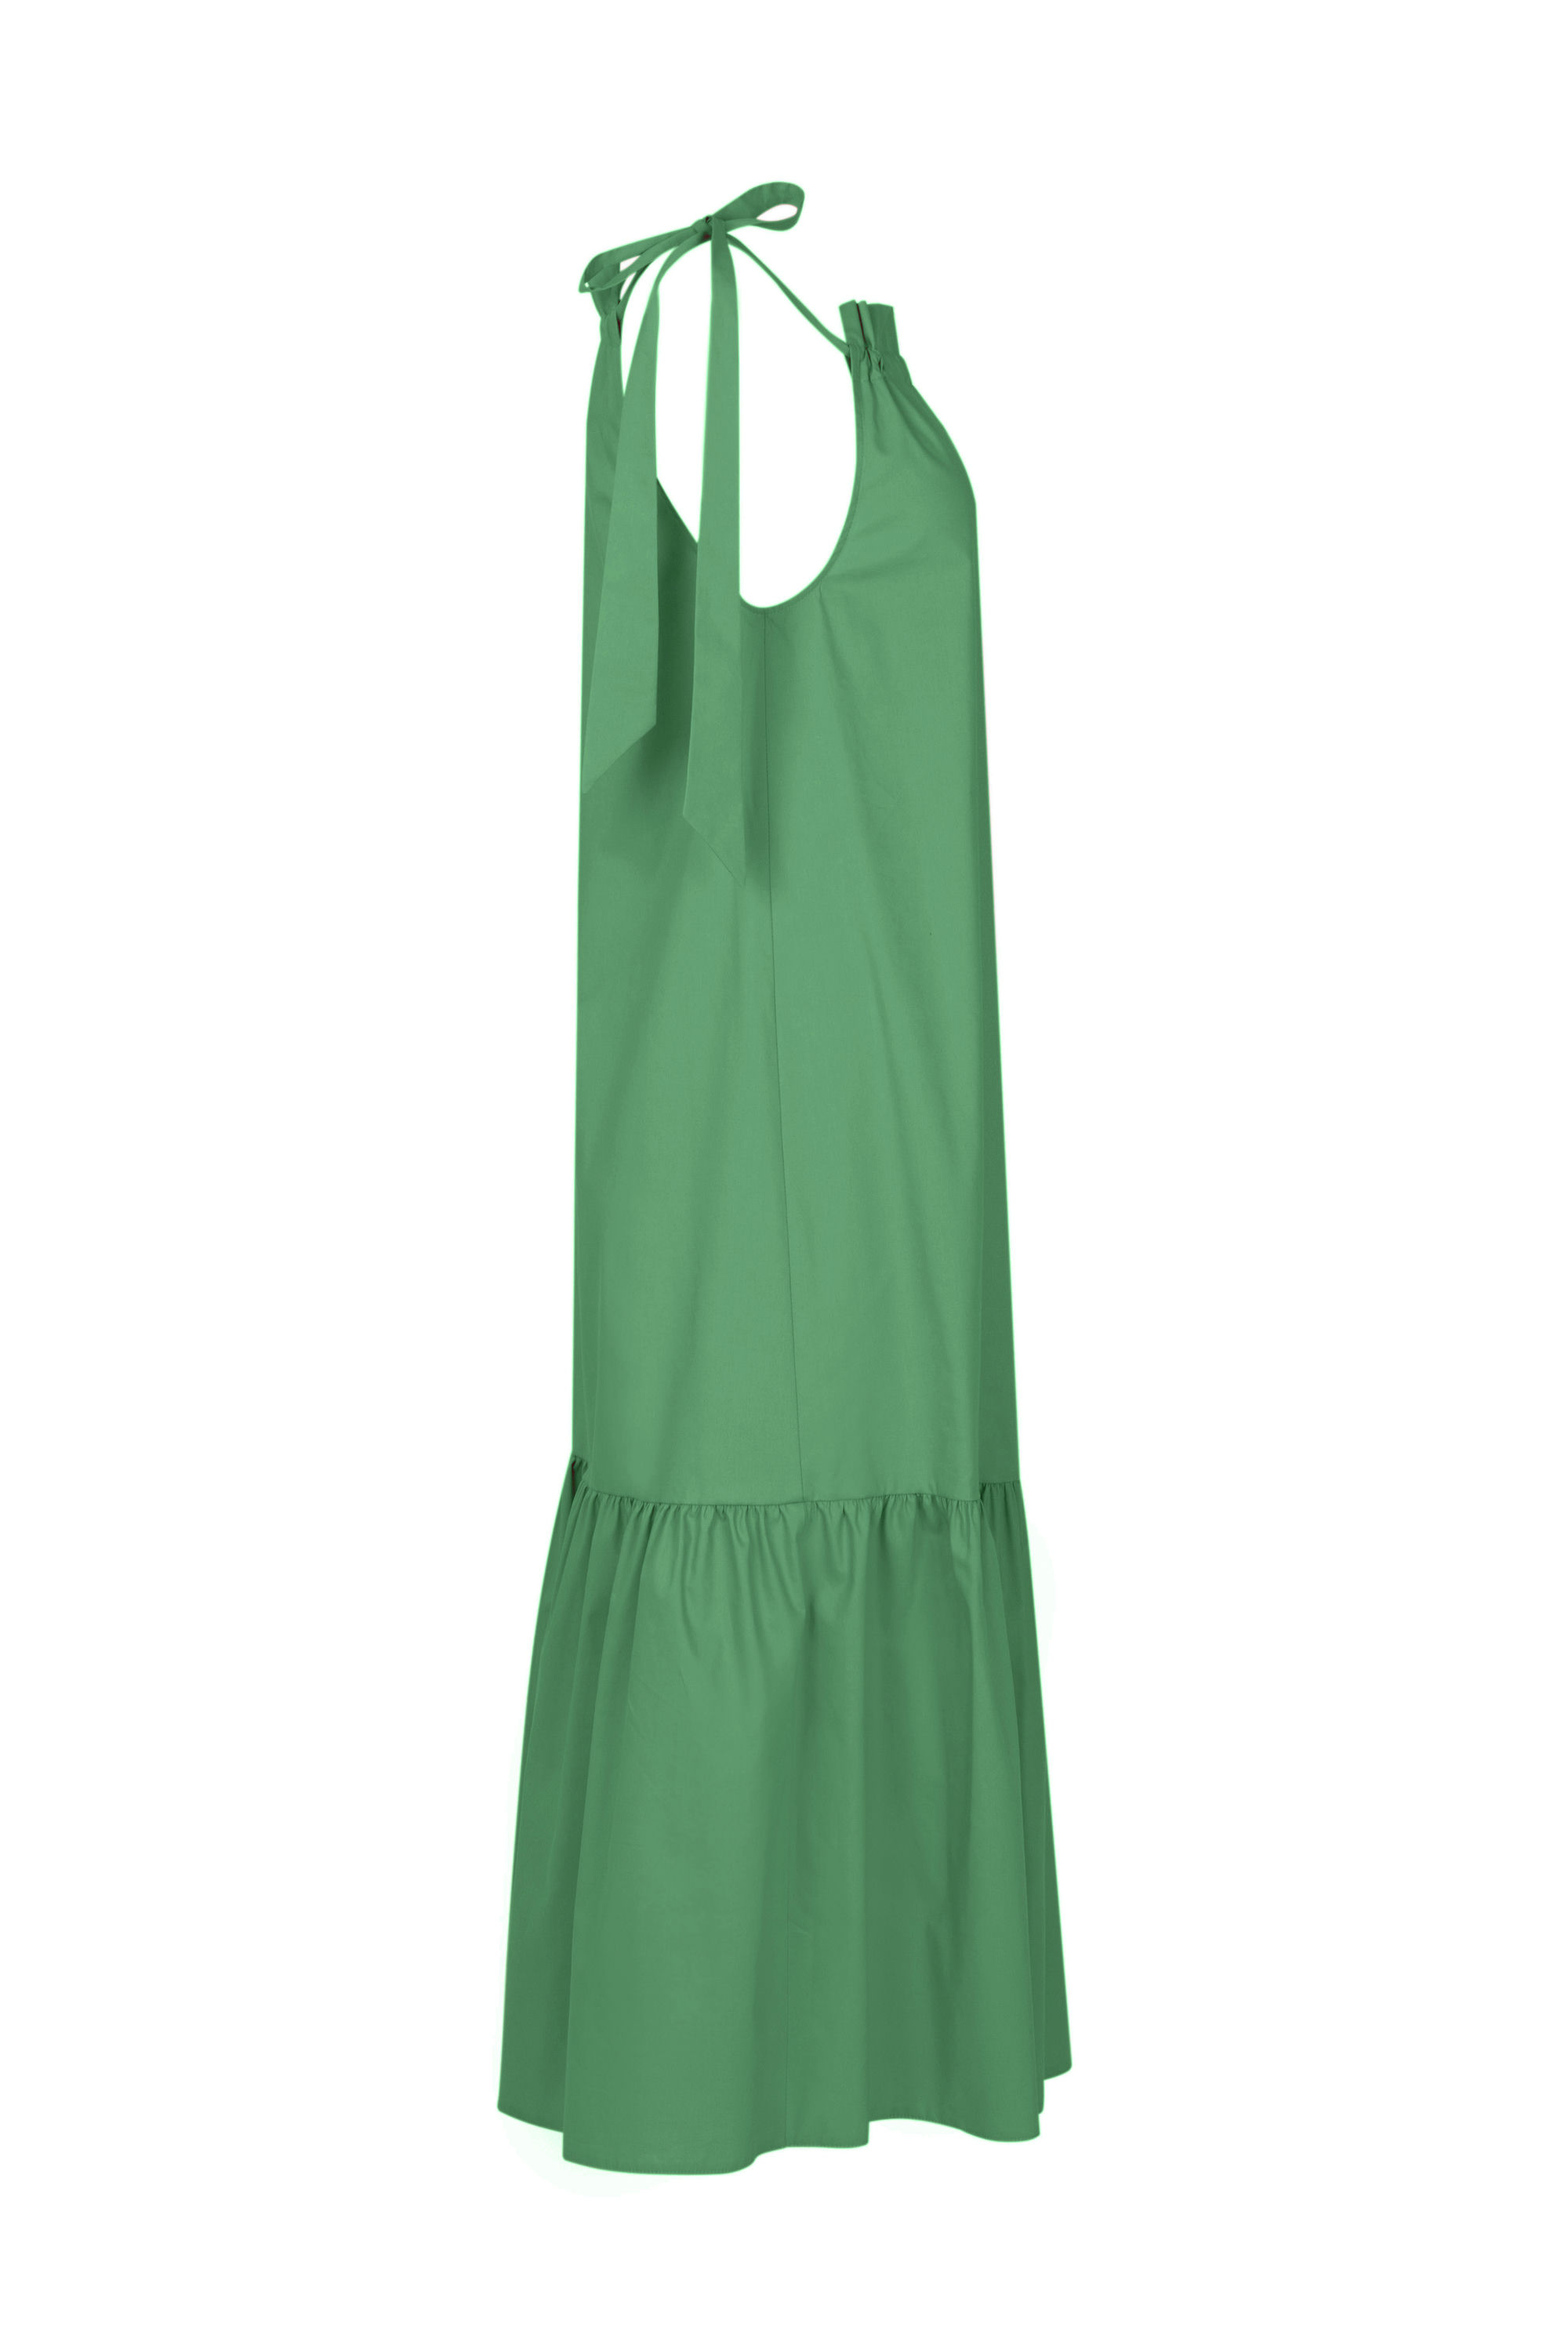 Платье женское 5К-12510-1. Фото 2.